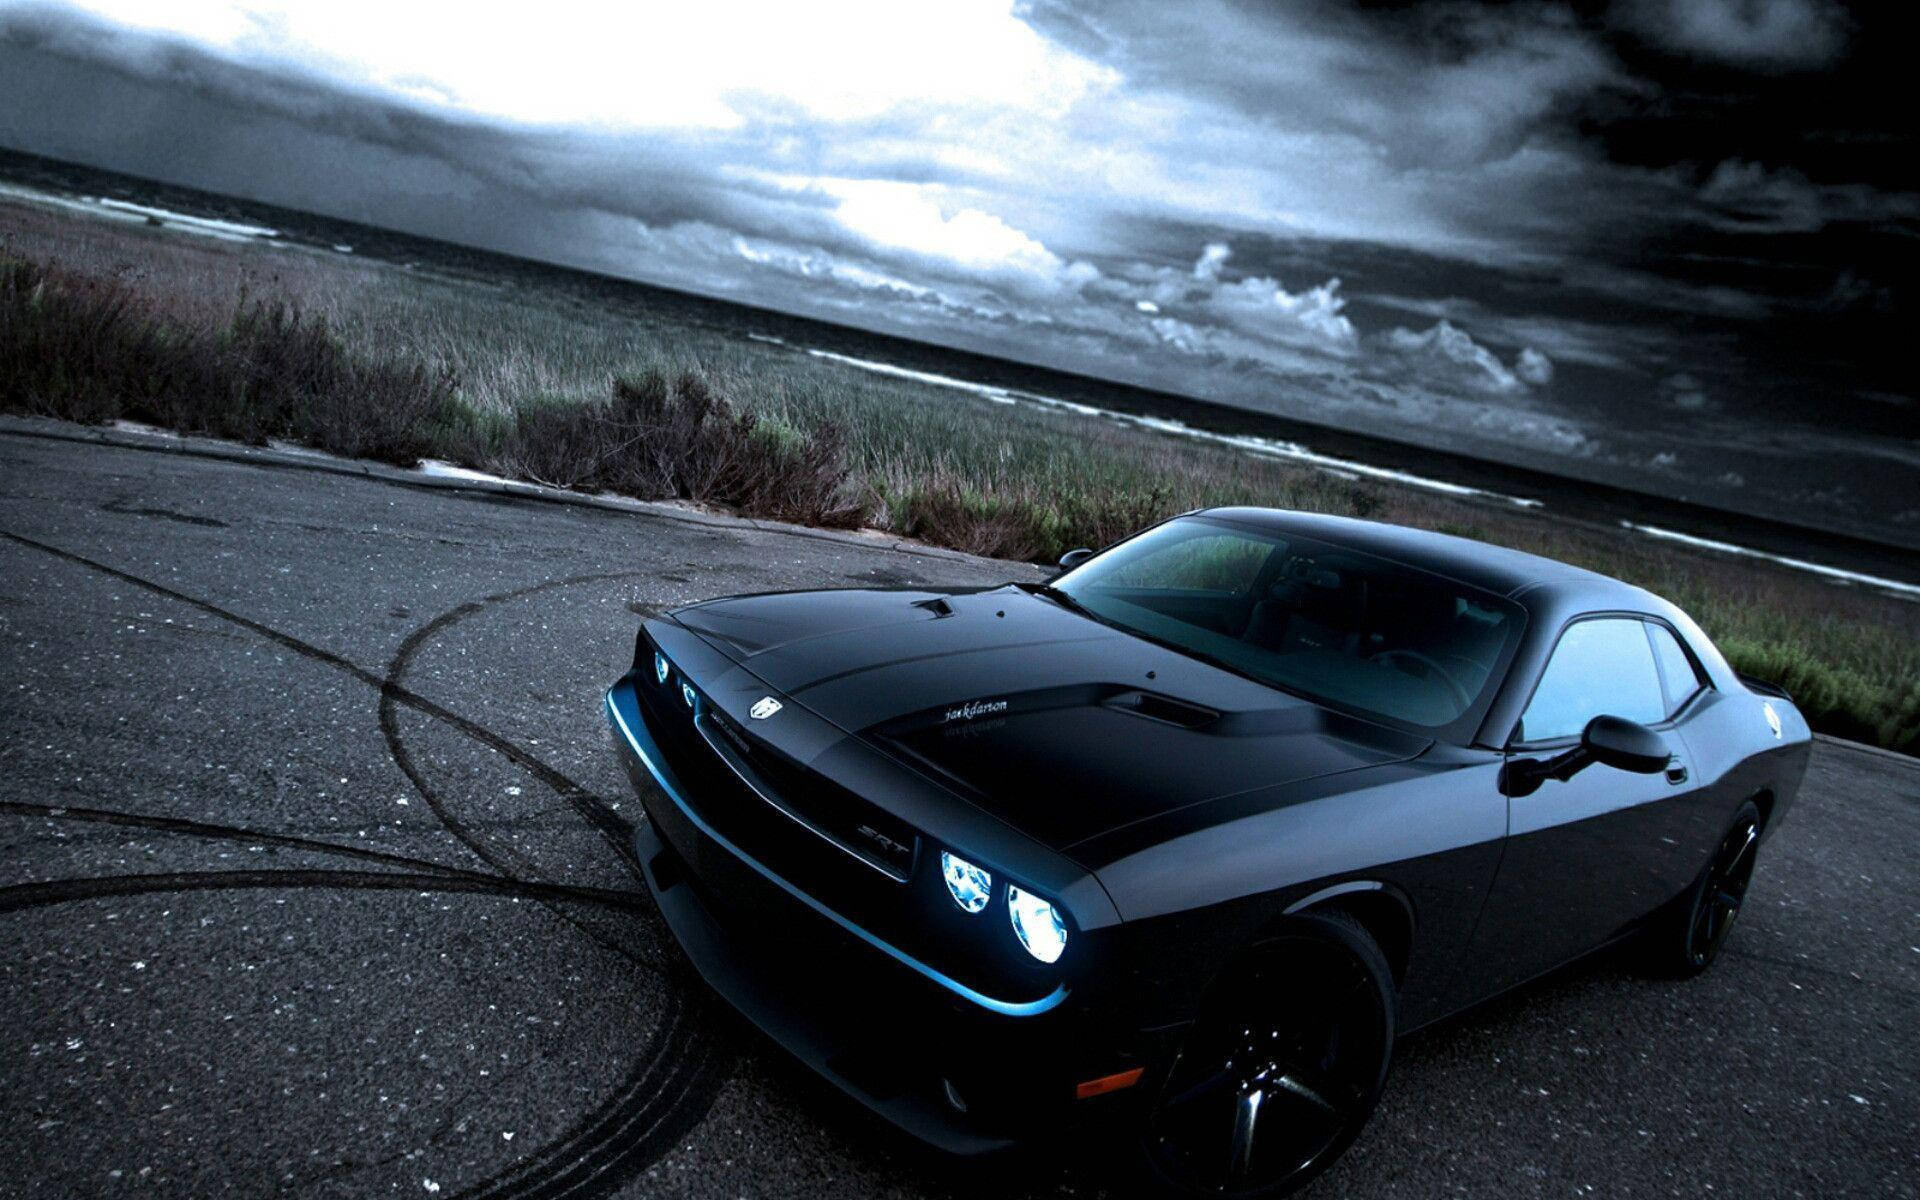 Dodge Challenger Metallic Black Paint